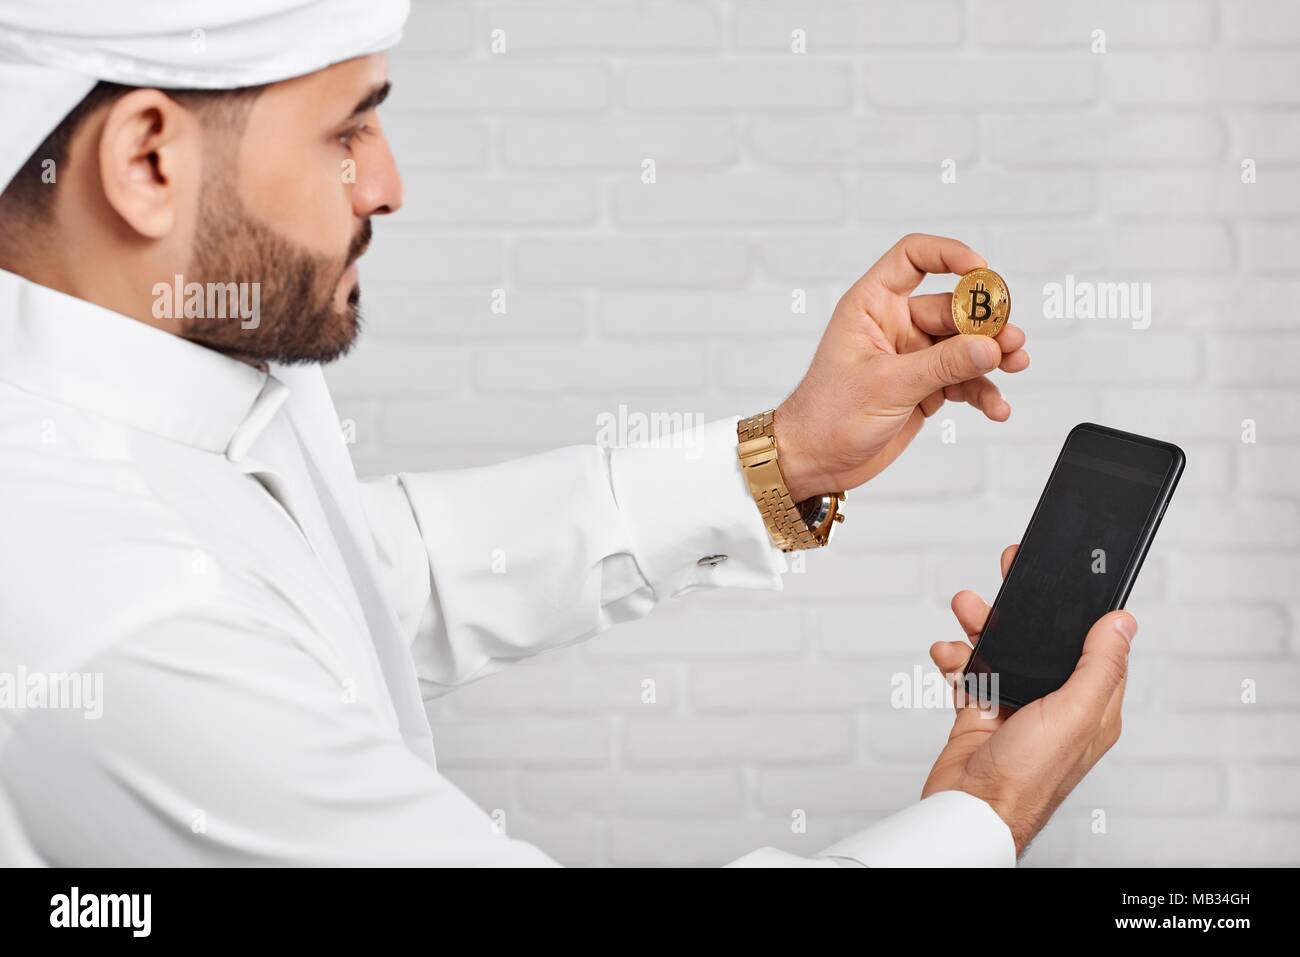 Arabian woman blanc traditionnel de maintien de l'usure musulmane bitcoin d'or et le téléphone mobile. Il a golden watch sur la main gauche. Un homme a l'air très occupé Banque D'Images